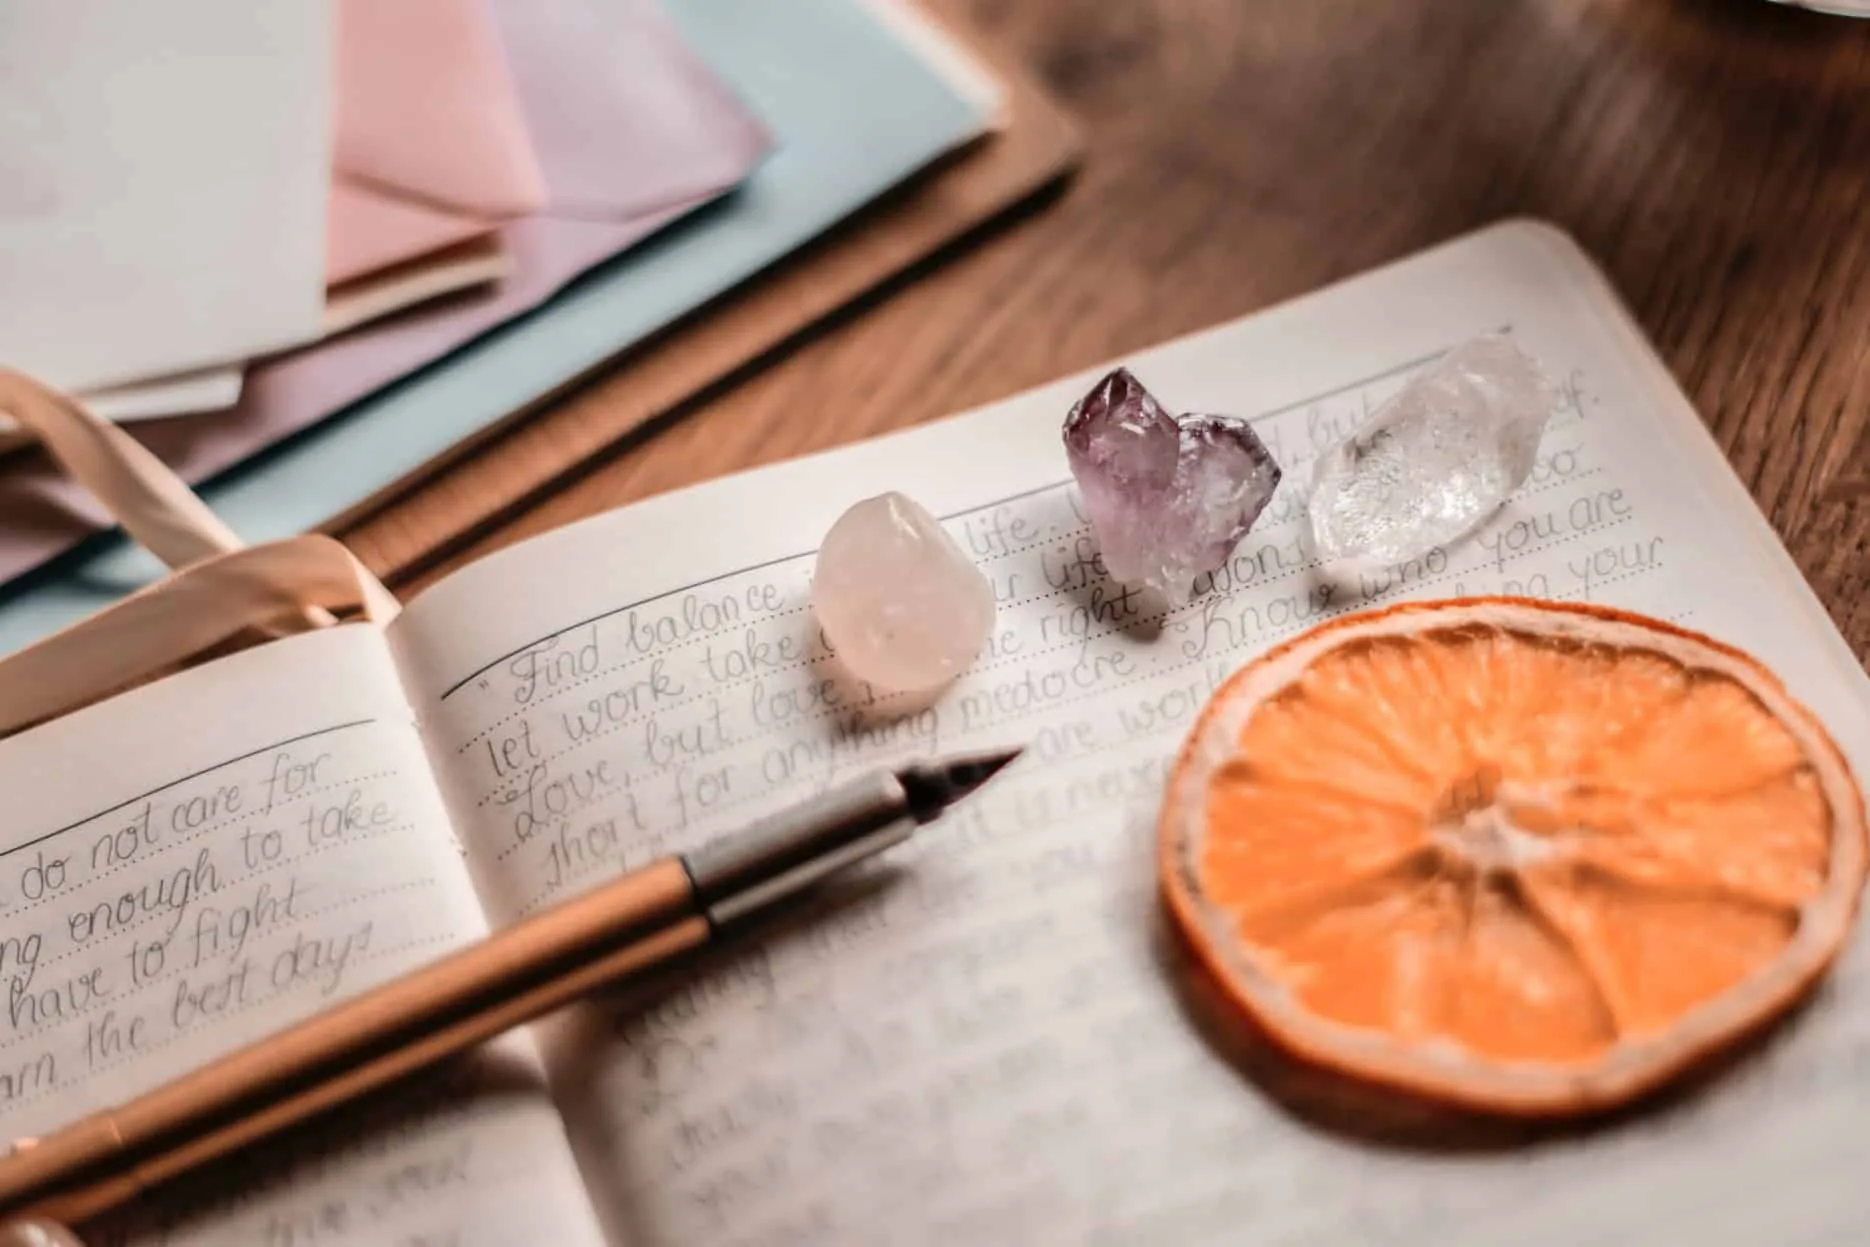 Notatnik z ręcznie pisanych refleksji, obok pióra, kryształów i suszonego plasterka pomarańczy na drewnianym stole.